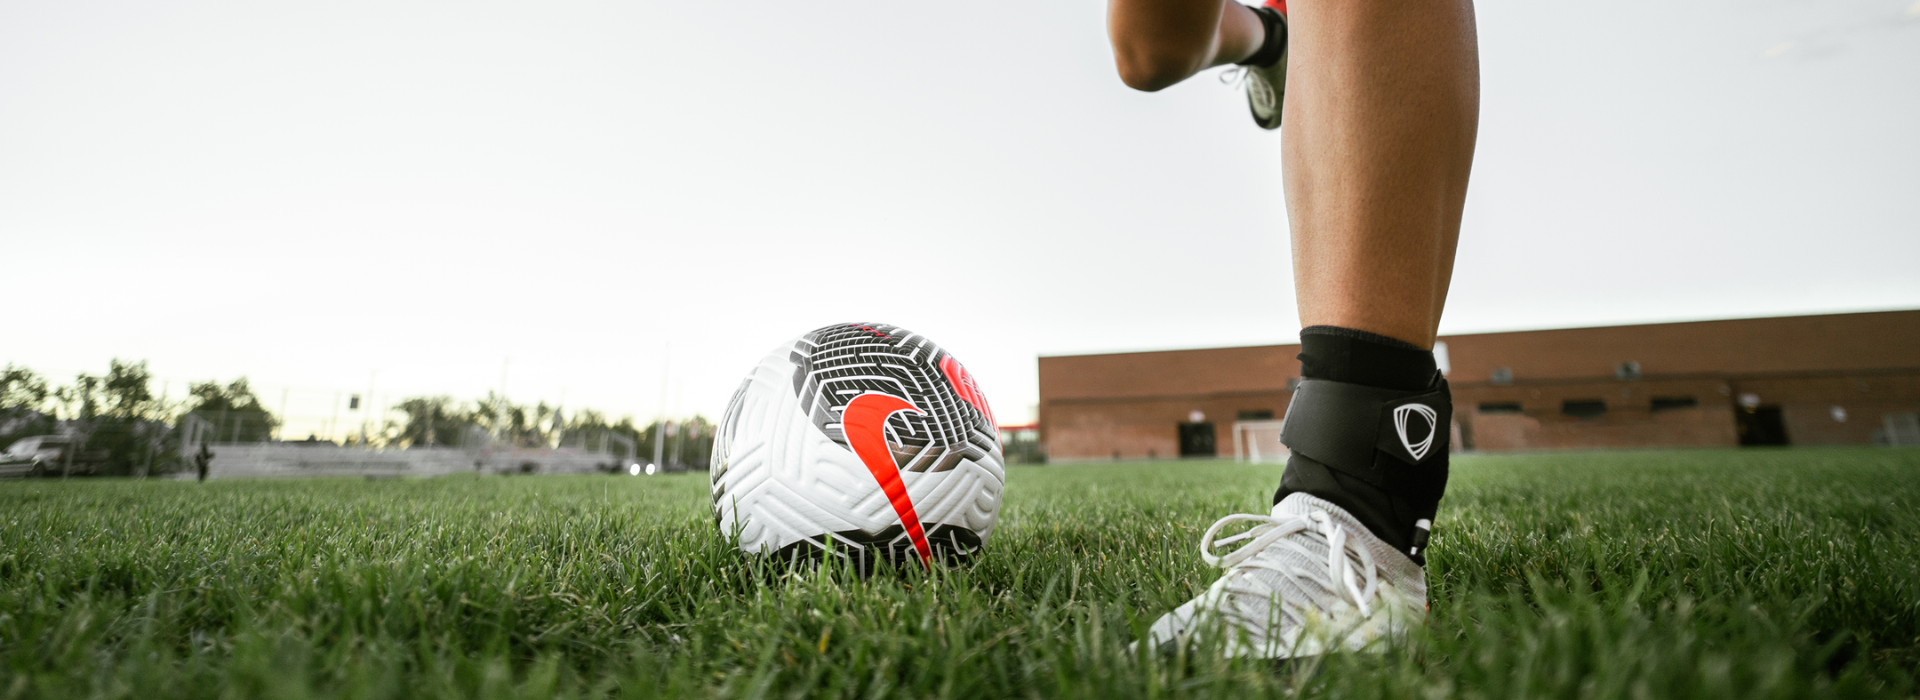 Schnellere Rückkehr zum Fußball nach einer Sprunggelenkverletzung? The BetterGuard macht's möglich